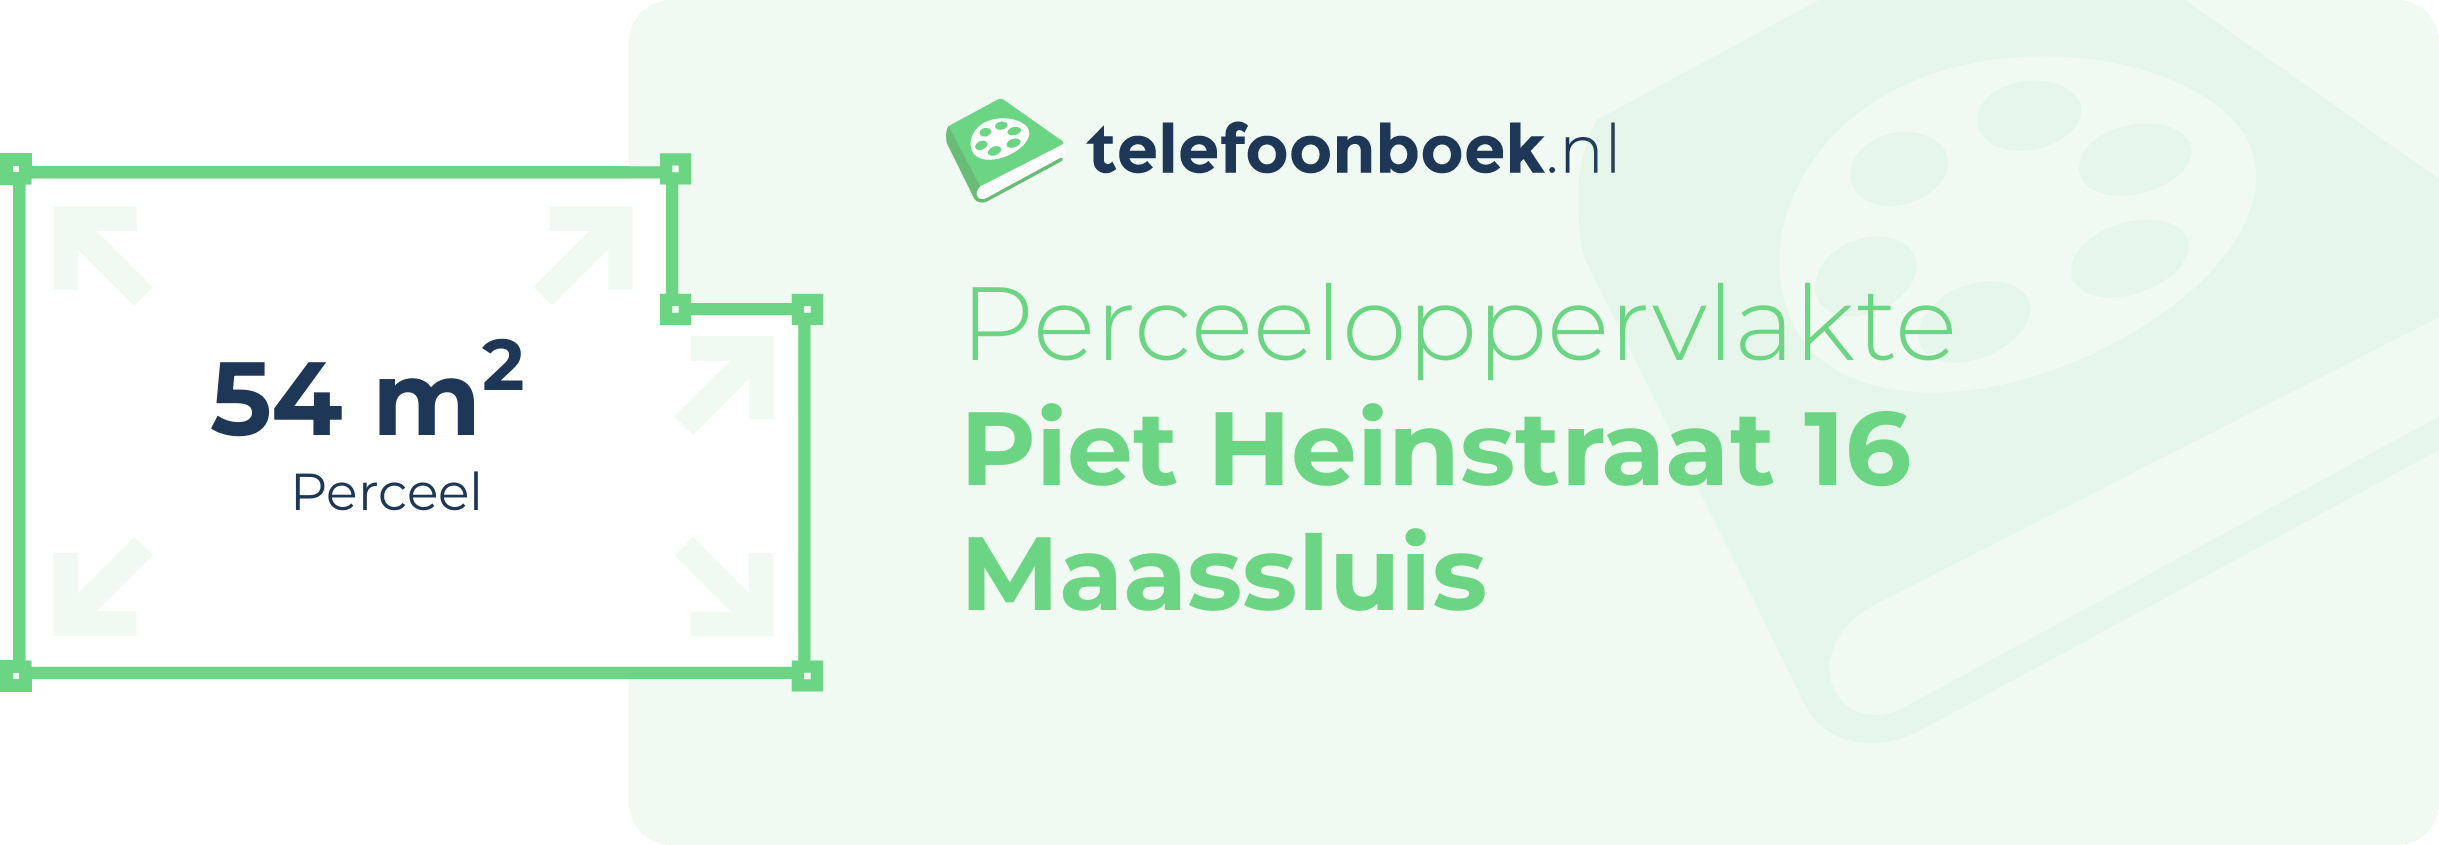 Perceeloppervlakte Piet Heinstraat 16 Maassluis